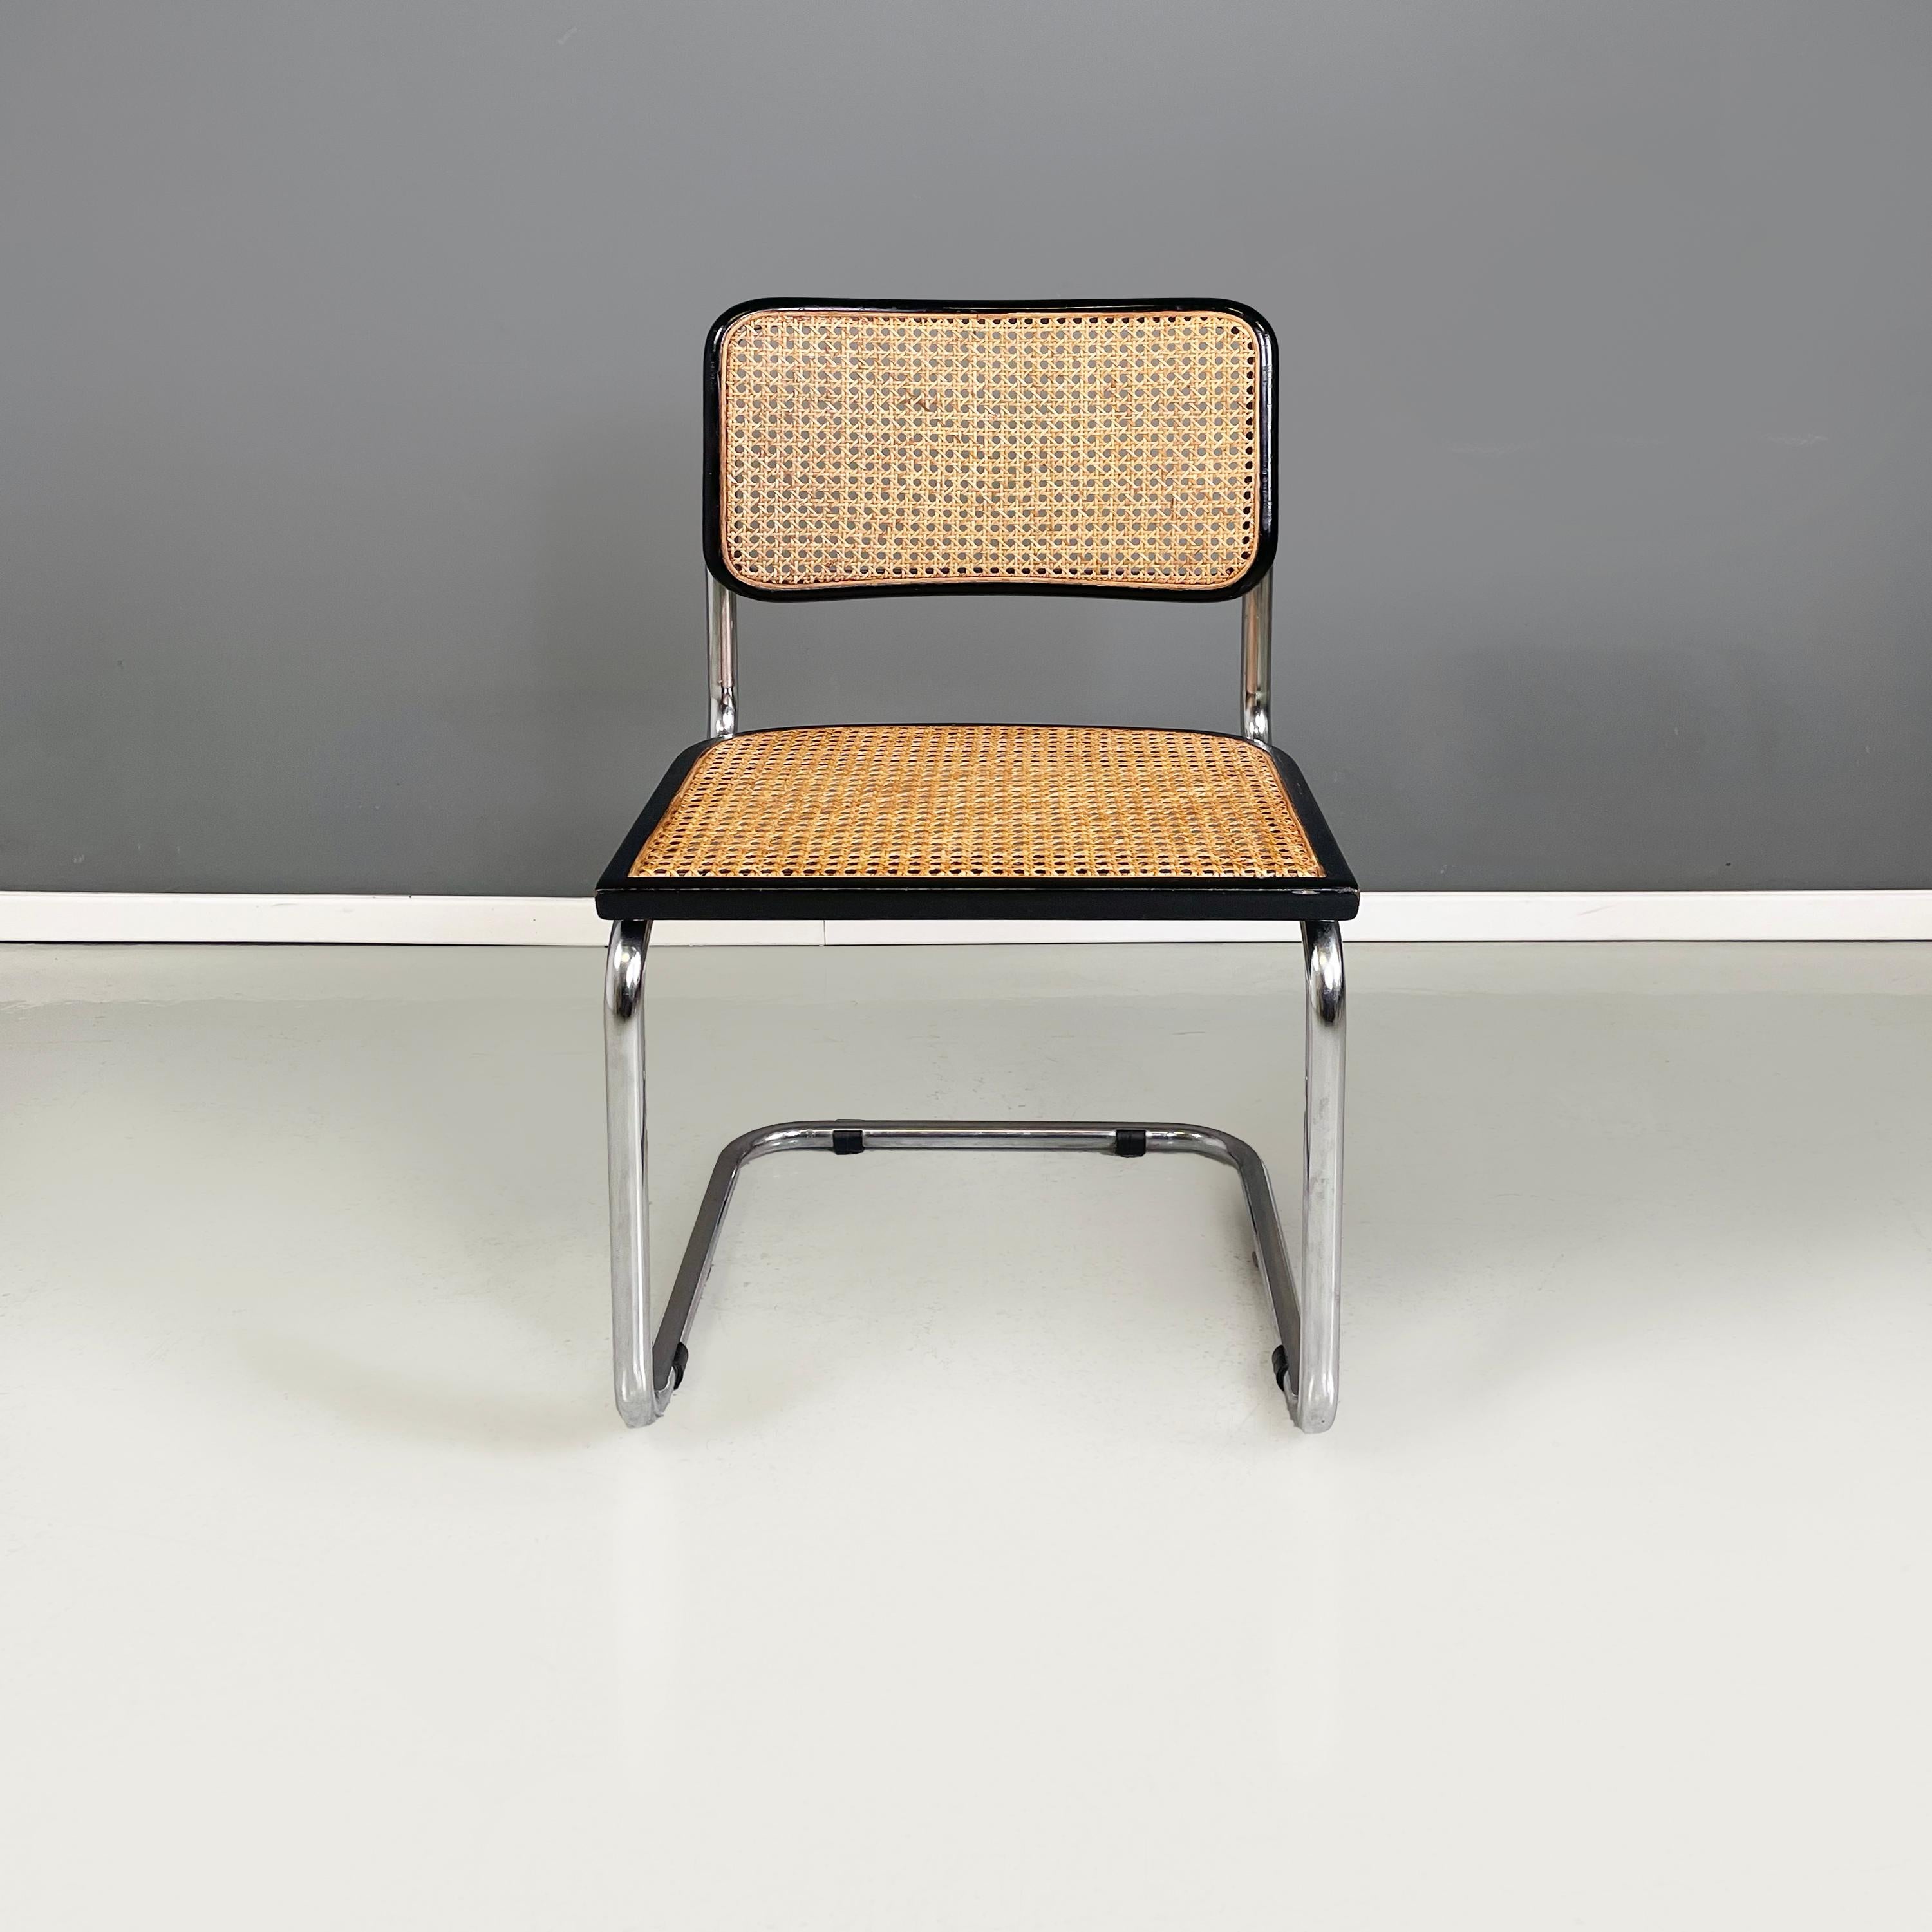 Chaise italienne moderne du milieu du siècle en paille, bois noir et acier courbé, années 1960.
Chaise avec assise et dossier en Vienne  paille jaune foncé avec des profils en bois peints en noir. La structure est en acier tubulaire. 
1960